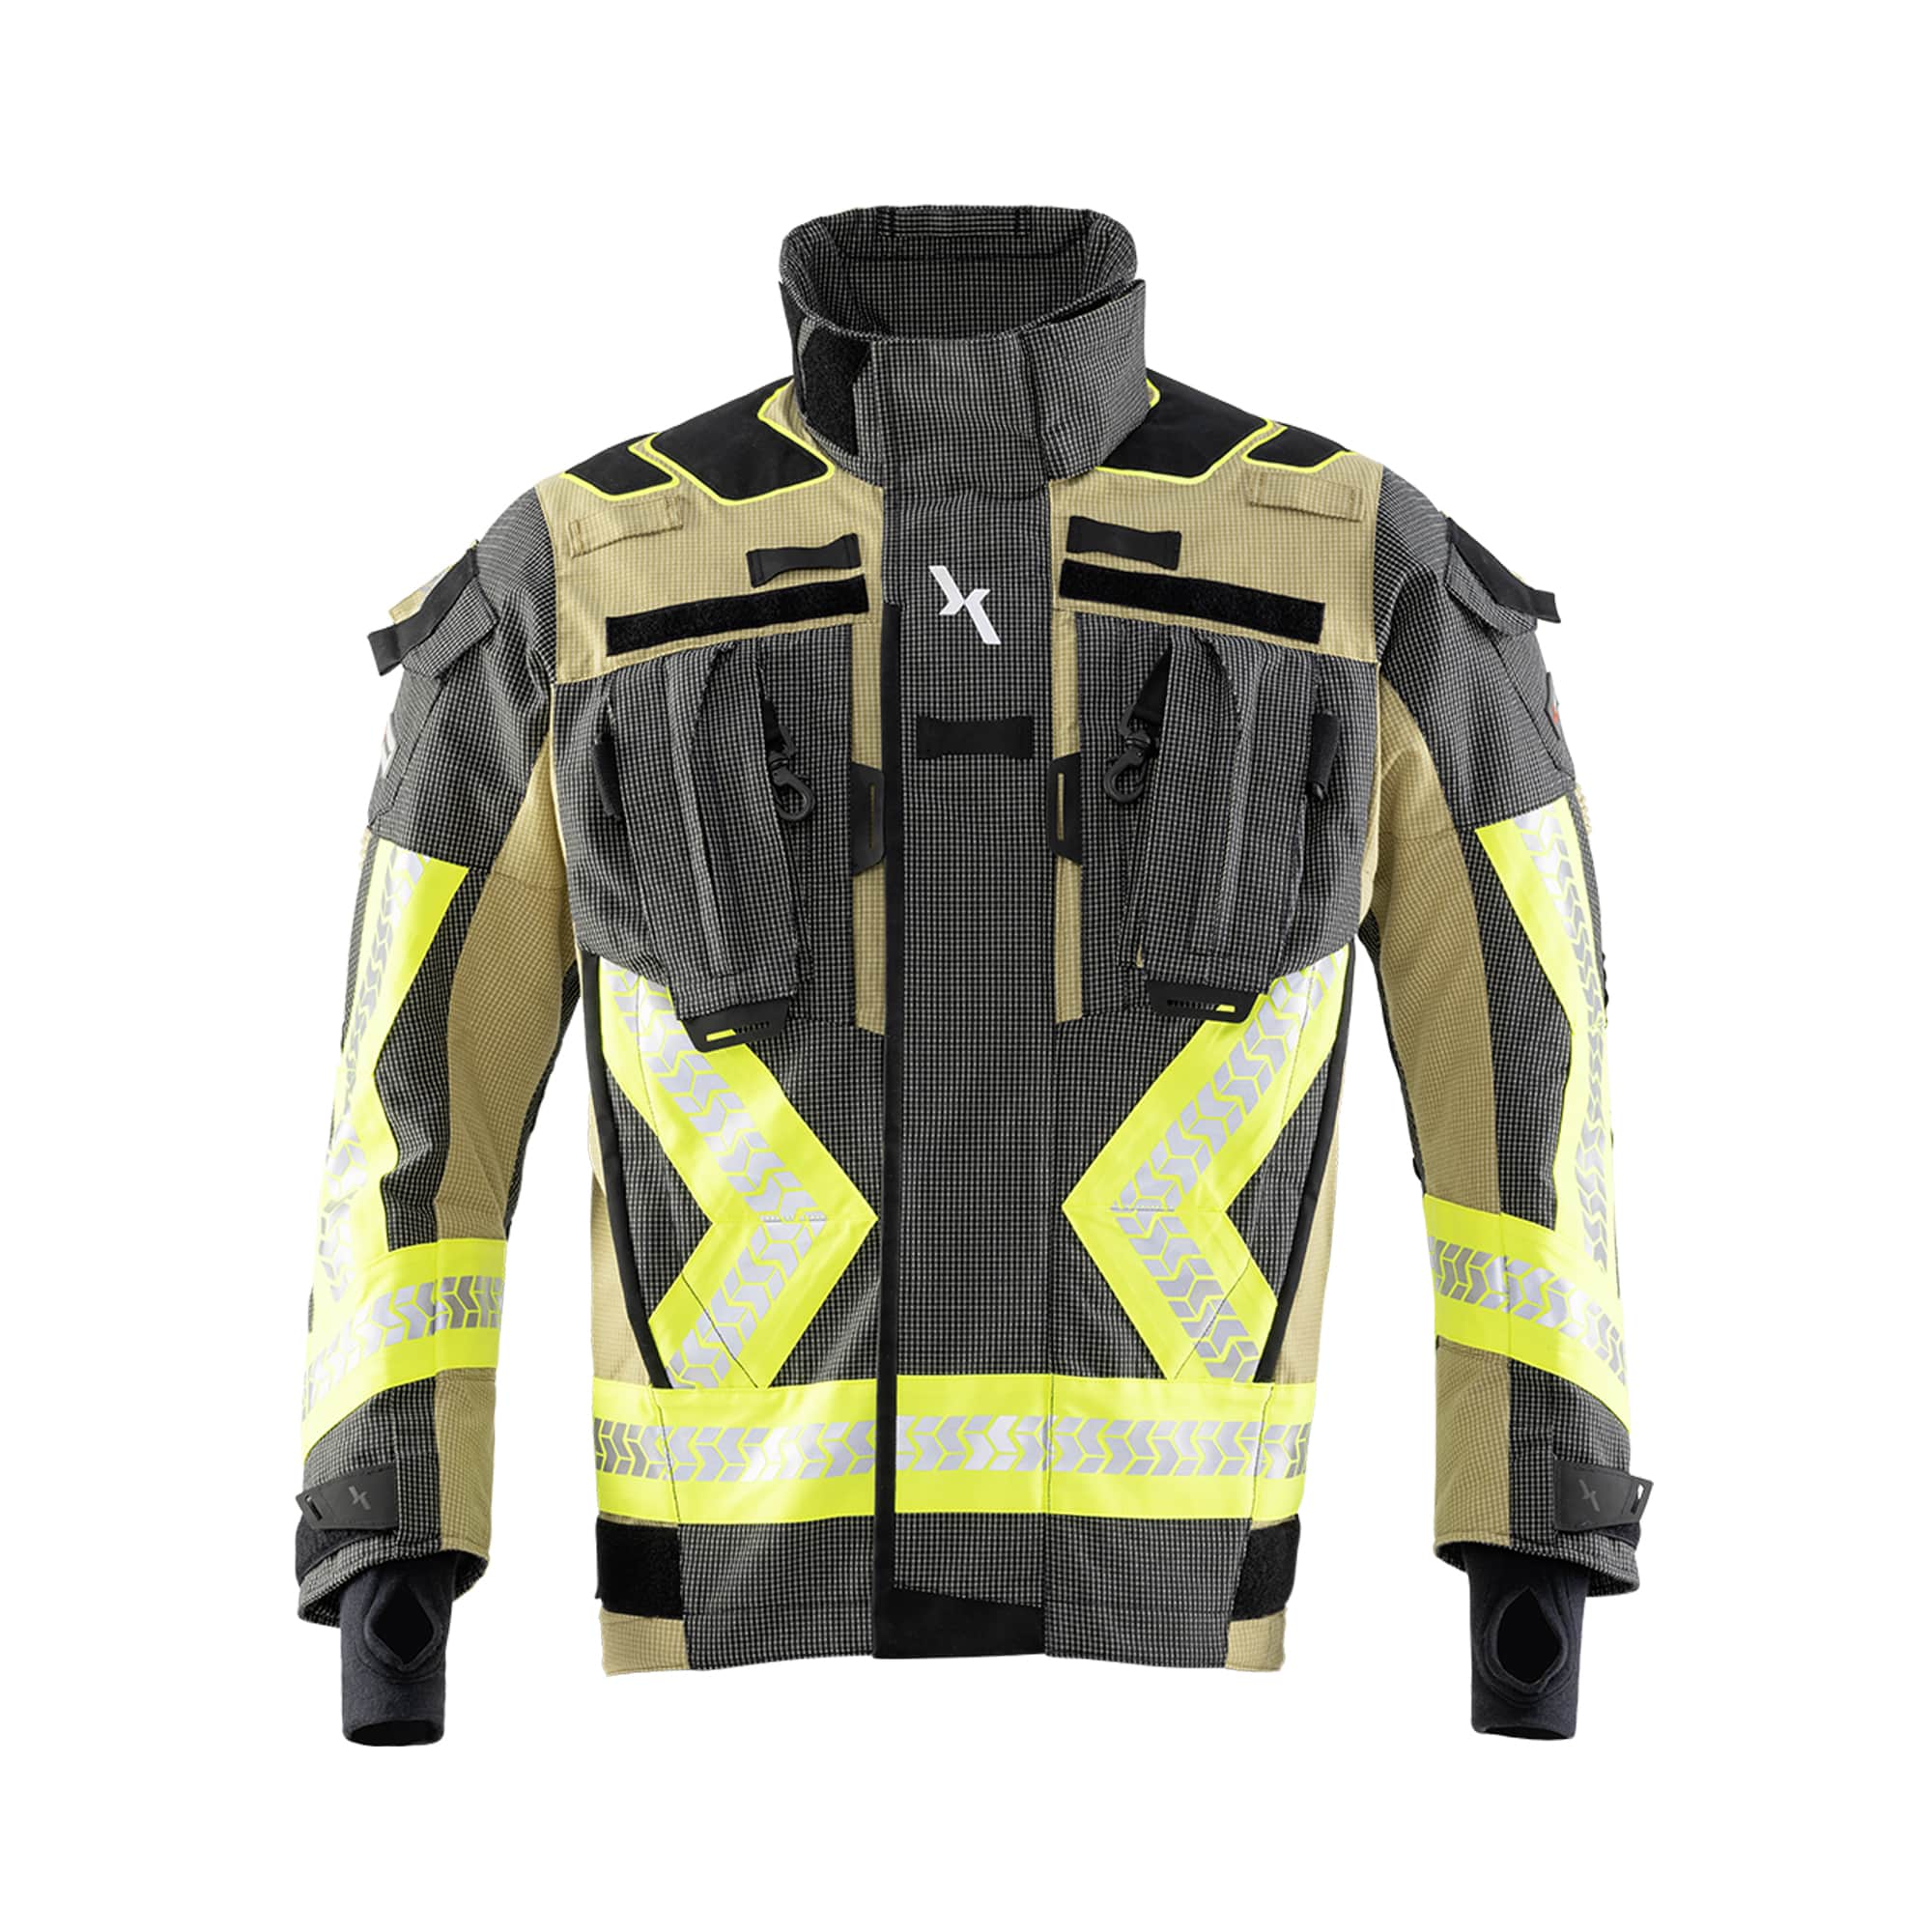 Interventno vatrogasno odijelo Texport Fire X-Flash